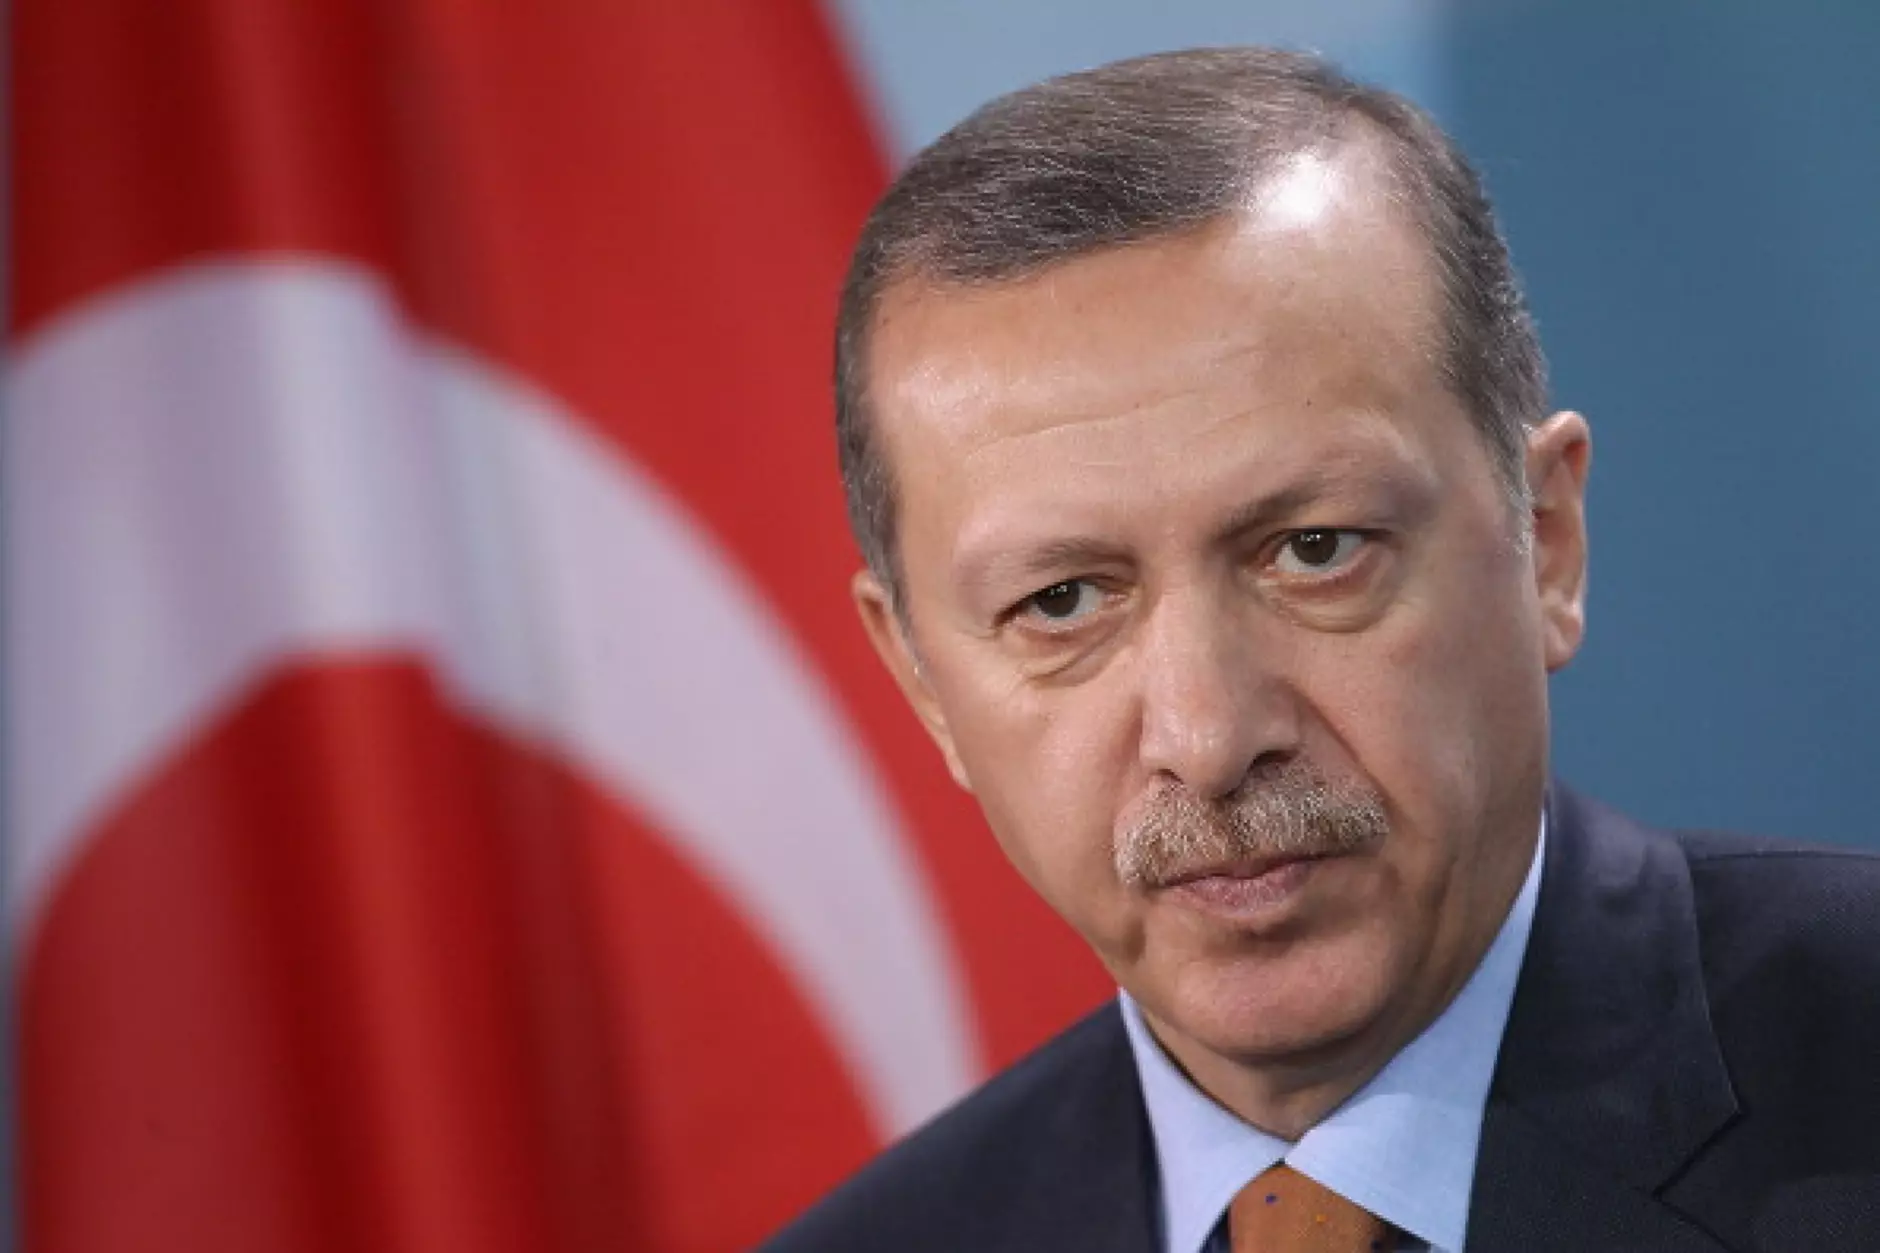 Ердоган плаши Гърция с турска балистична ракета